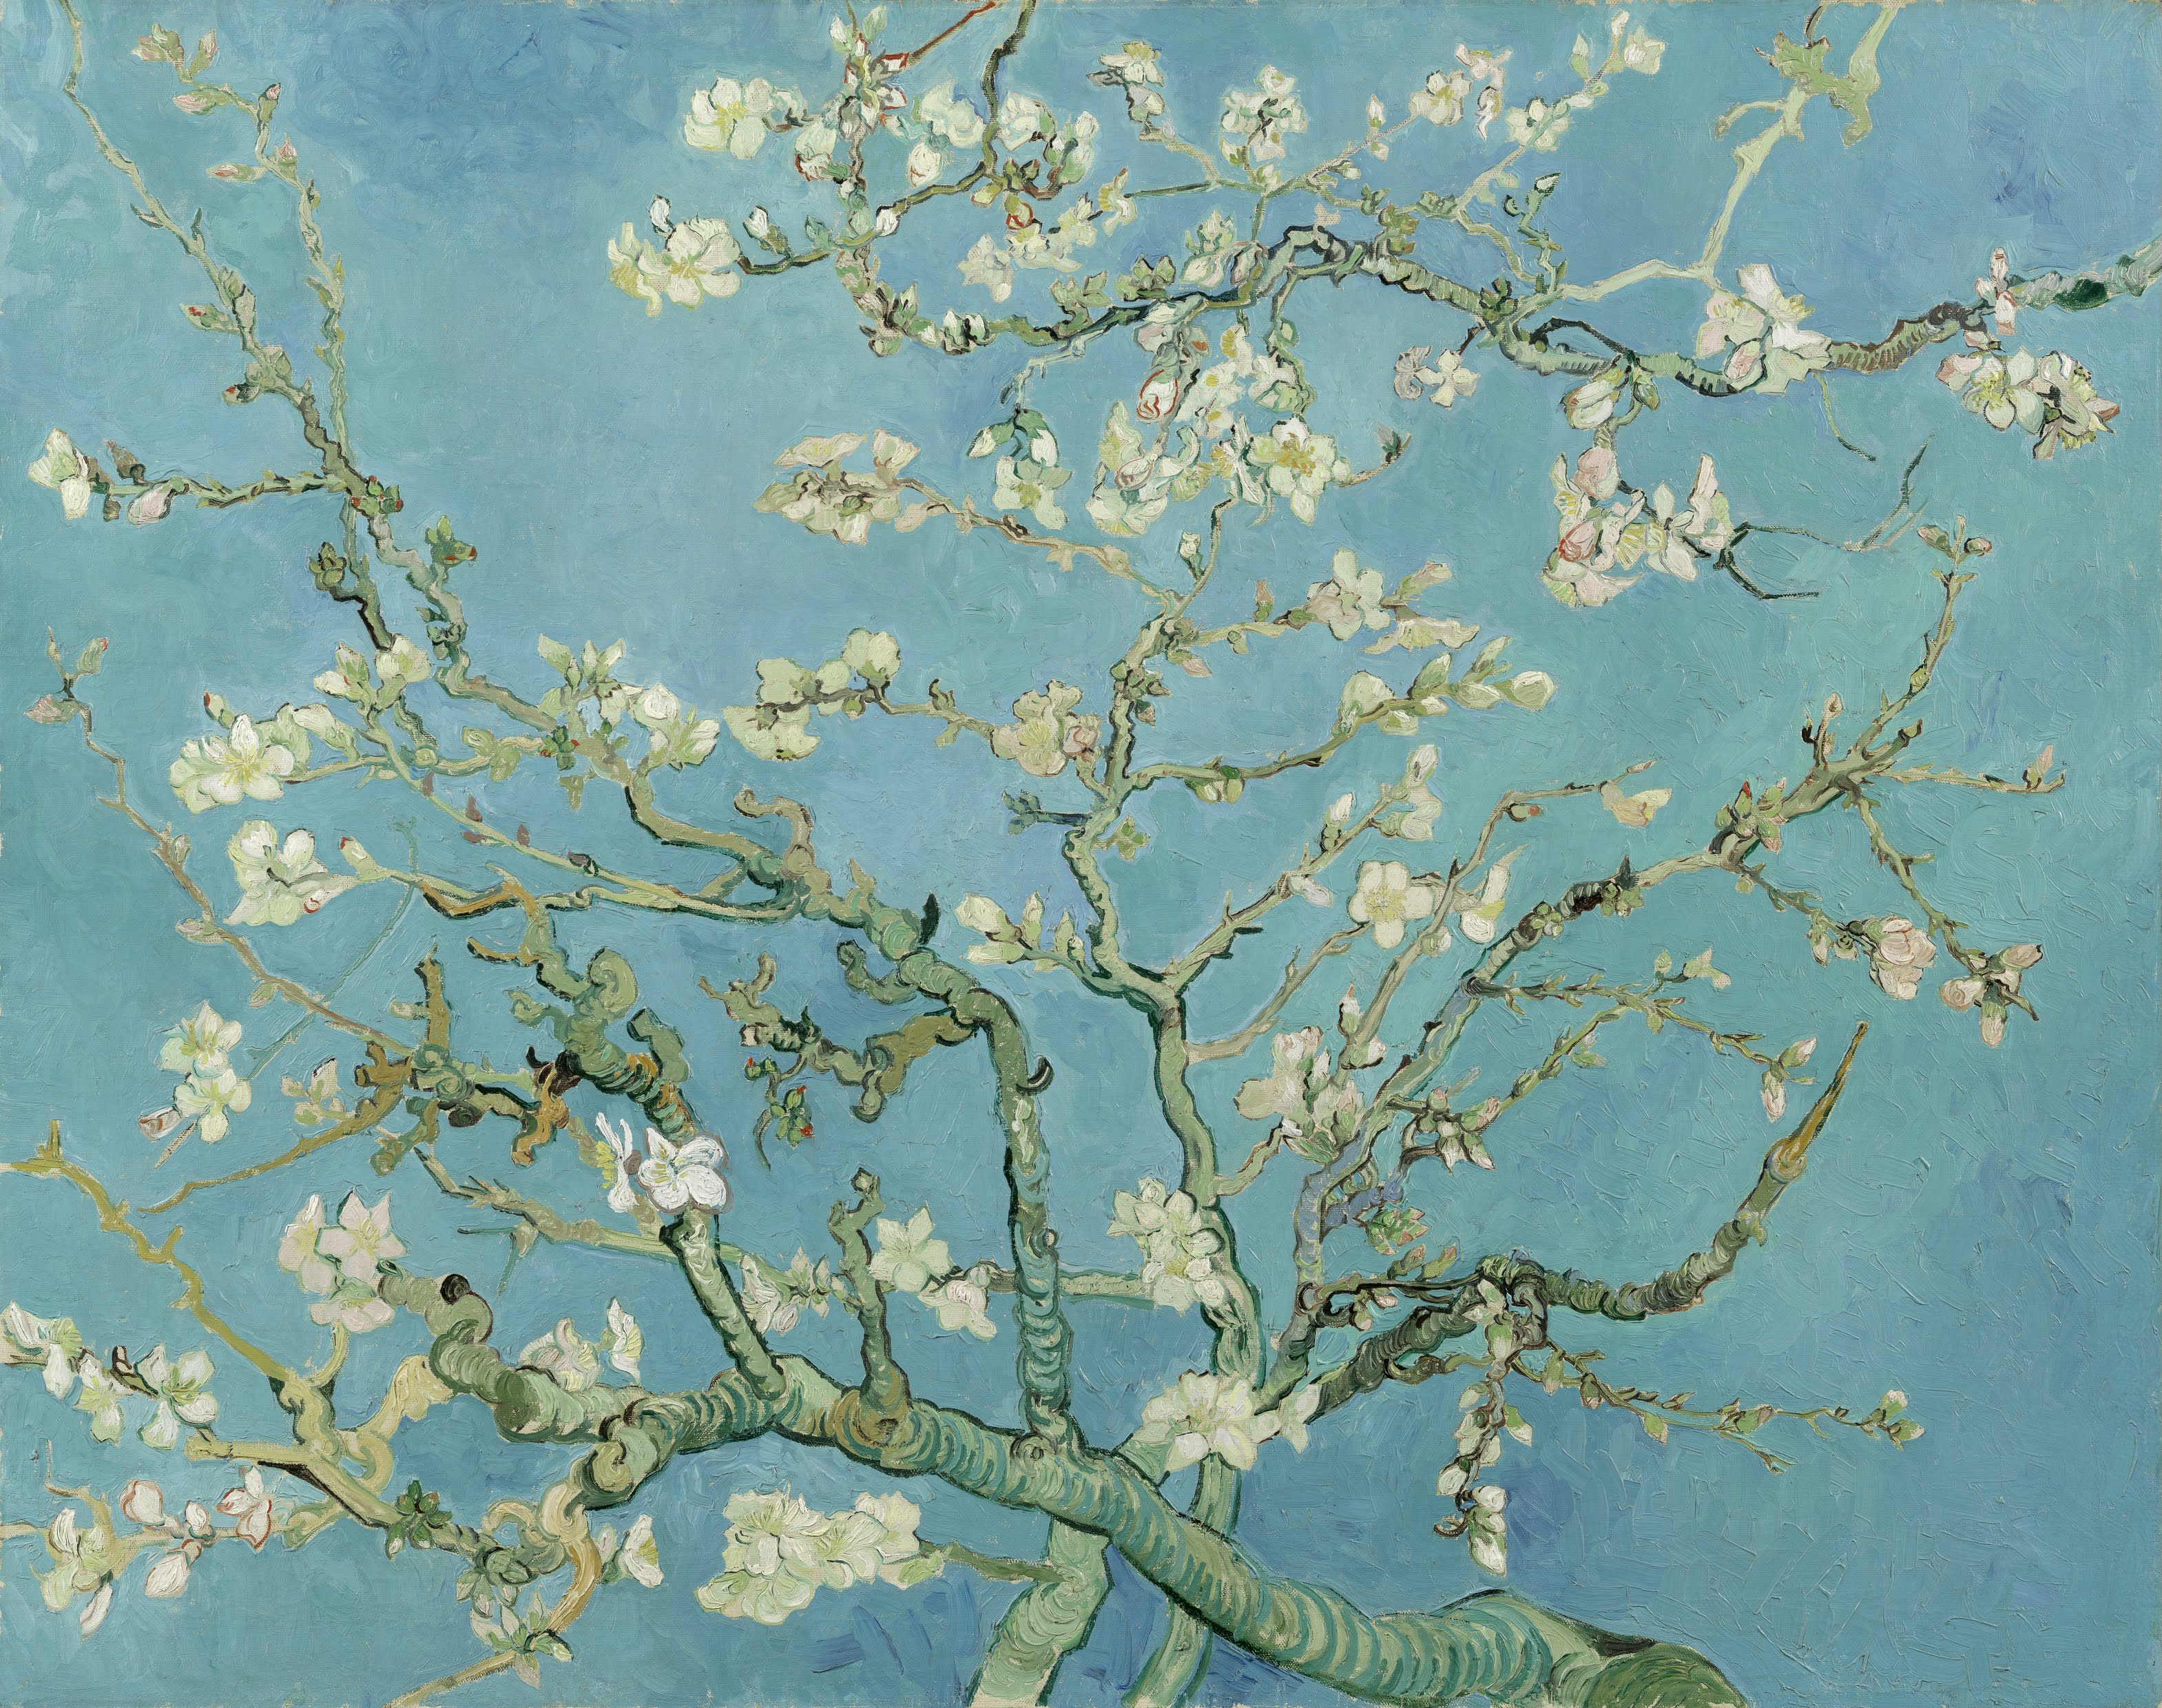 盛開的杏花 by Vincent van Gogh - 1890 - 74 x 92 厘米 